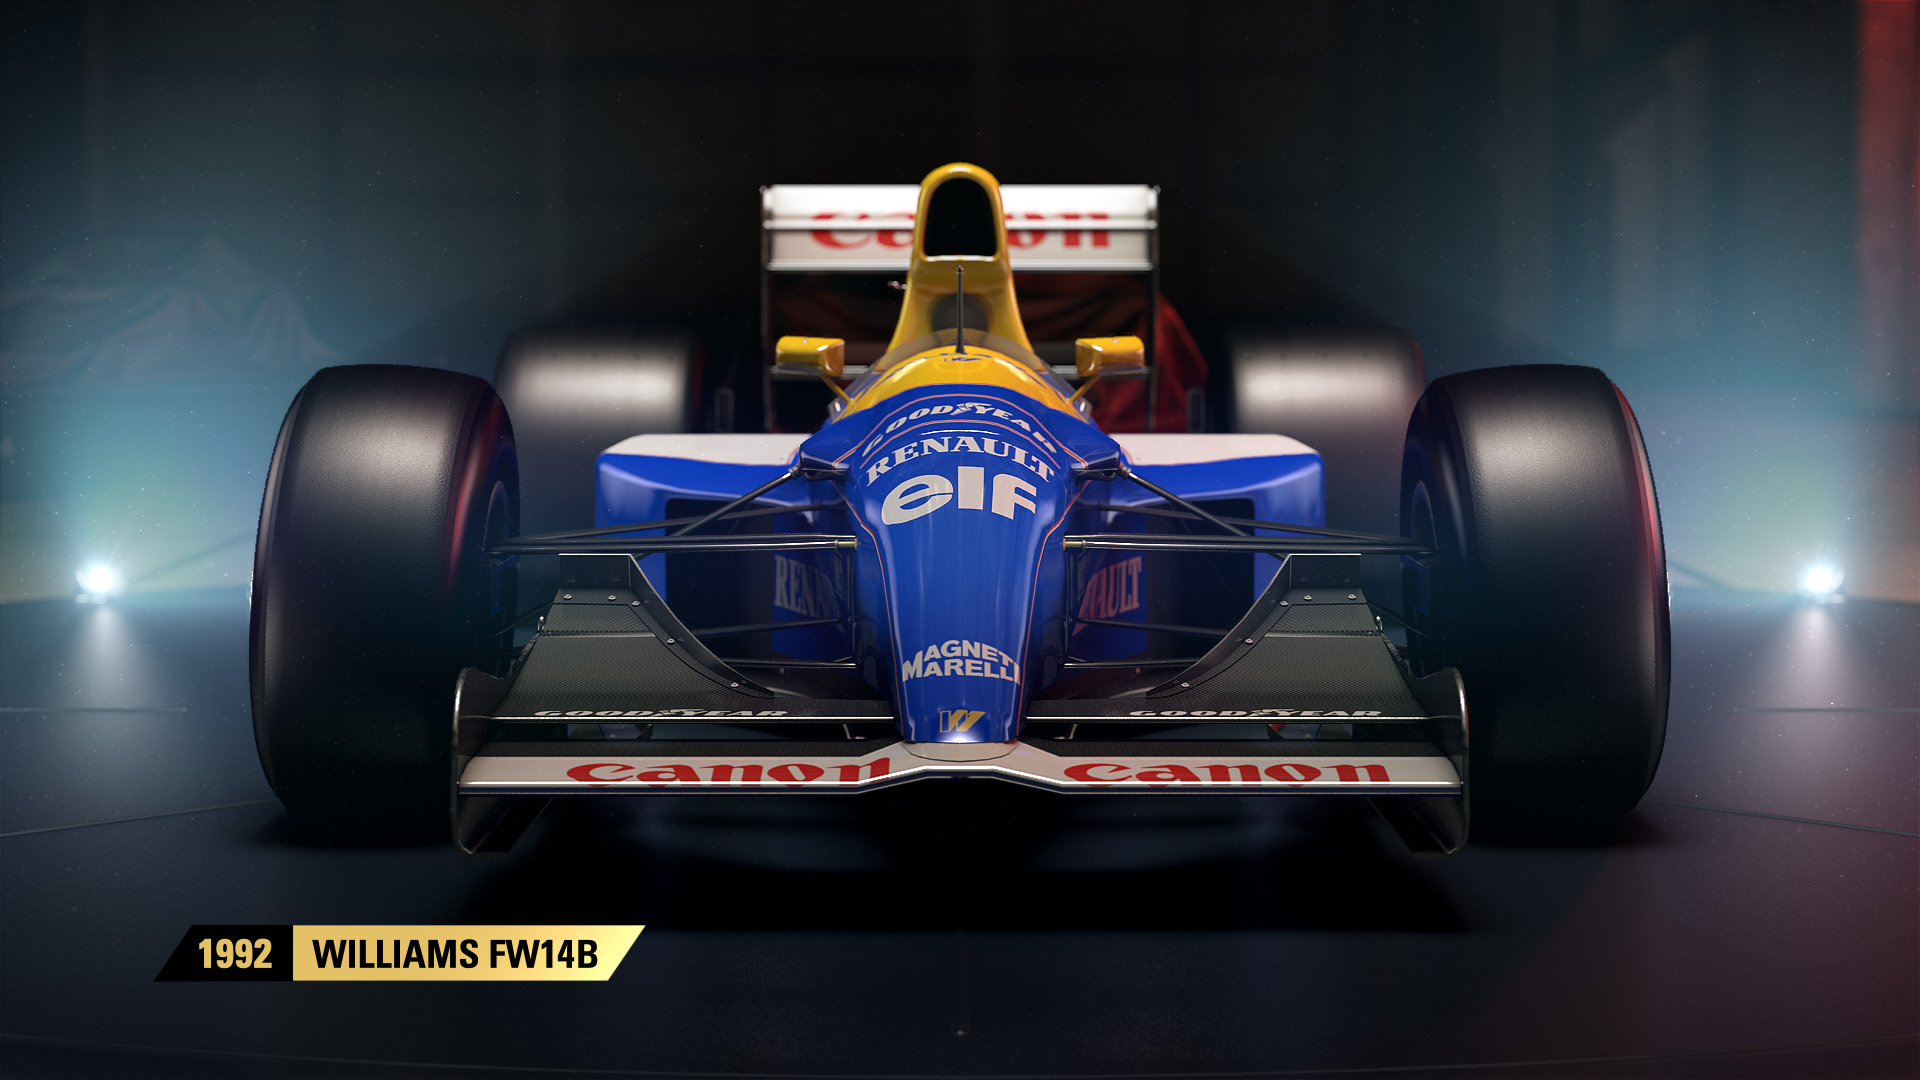 「F1 2017」クラシックカー紹介トレーラー第1弾を公開 - RALLYPLUS.NET ラリープラス